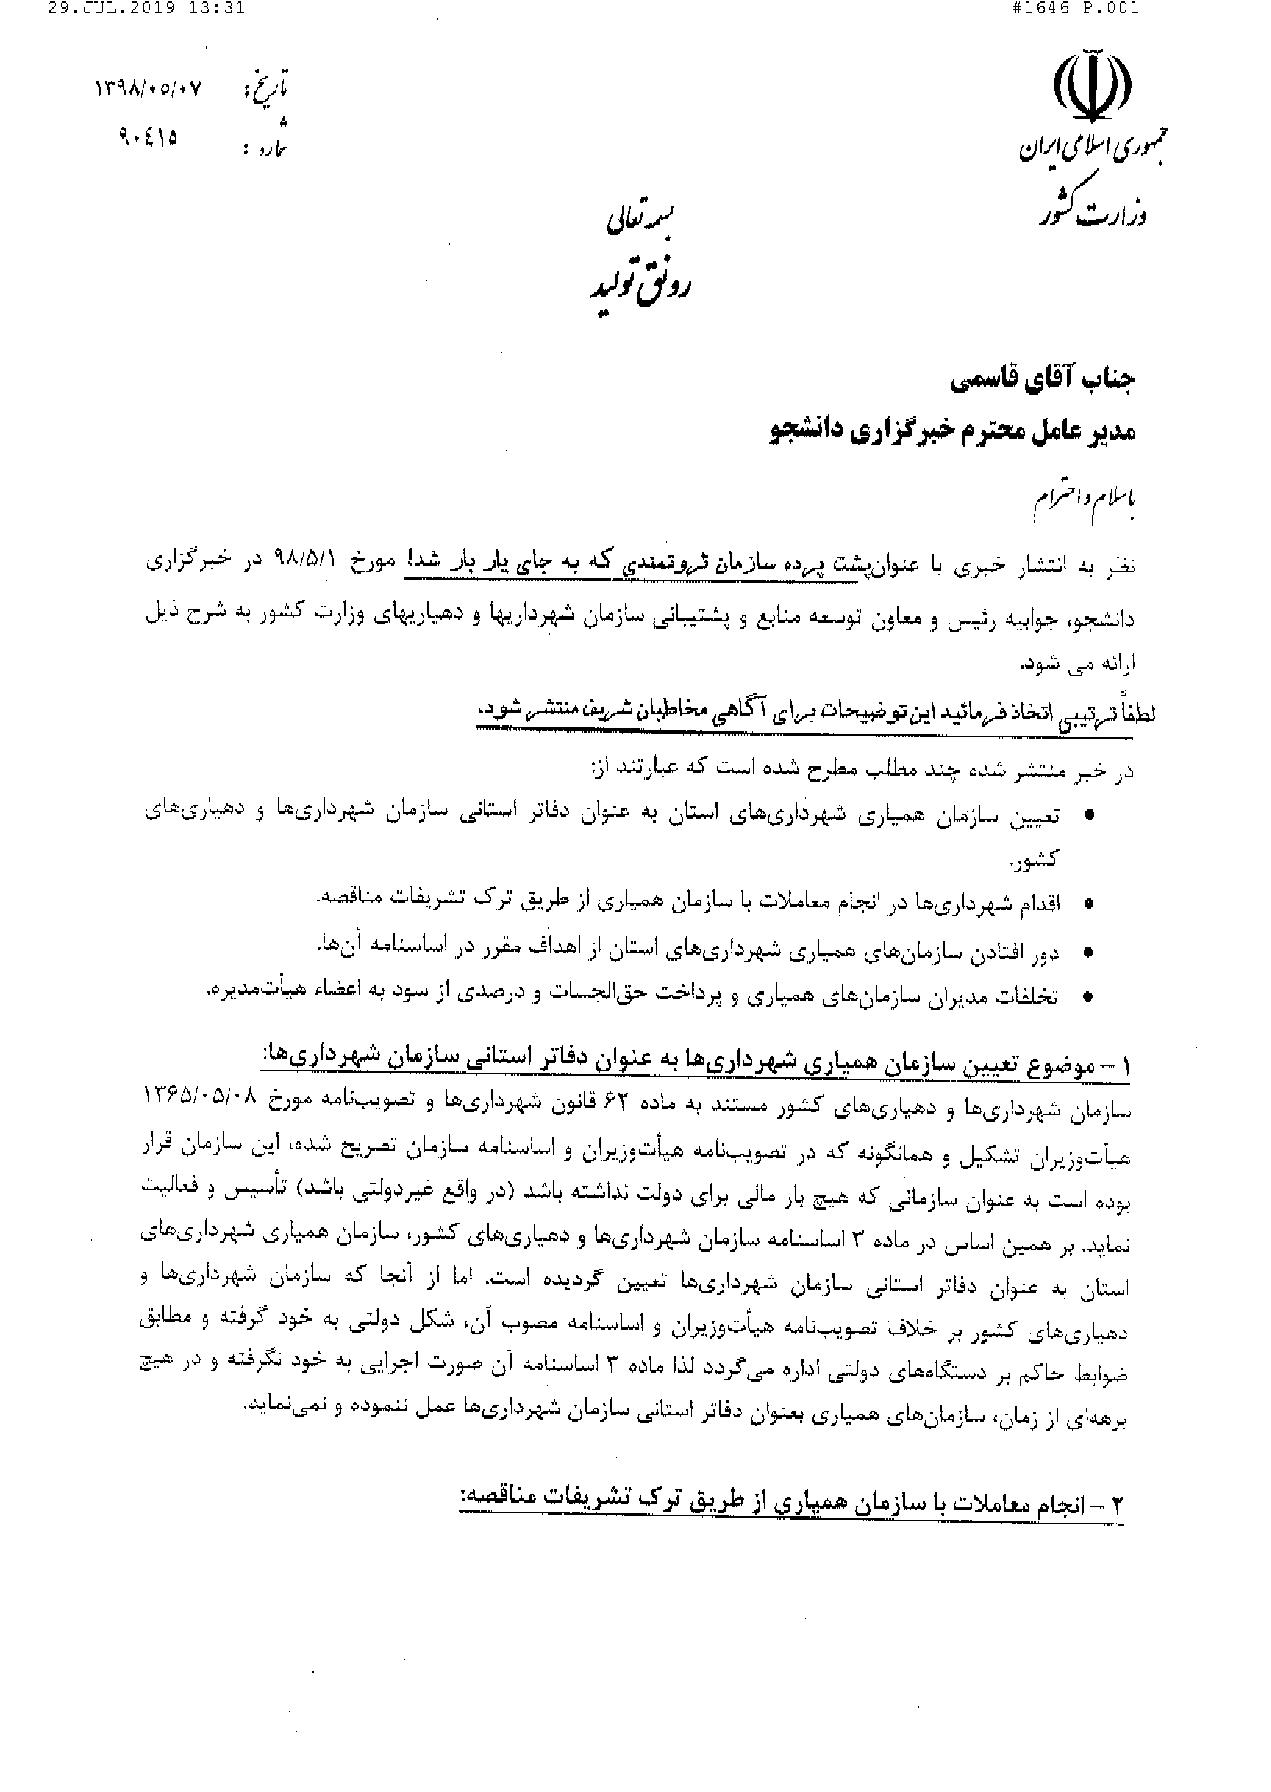 توضیحات وزارت کشور پیرامون گزارش خبرگزاری دانشجو در مورد تخلفات سازمان همیاری